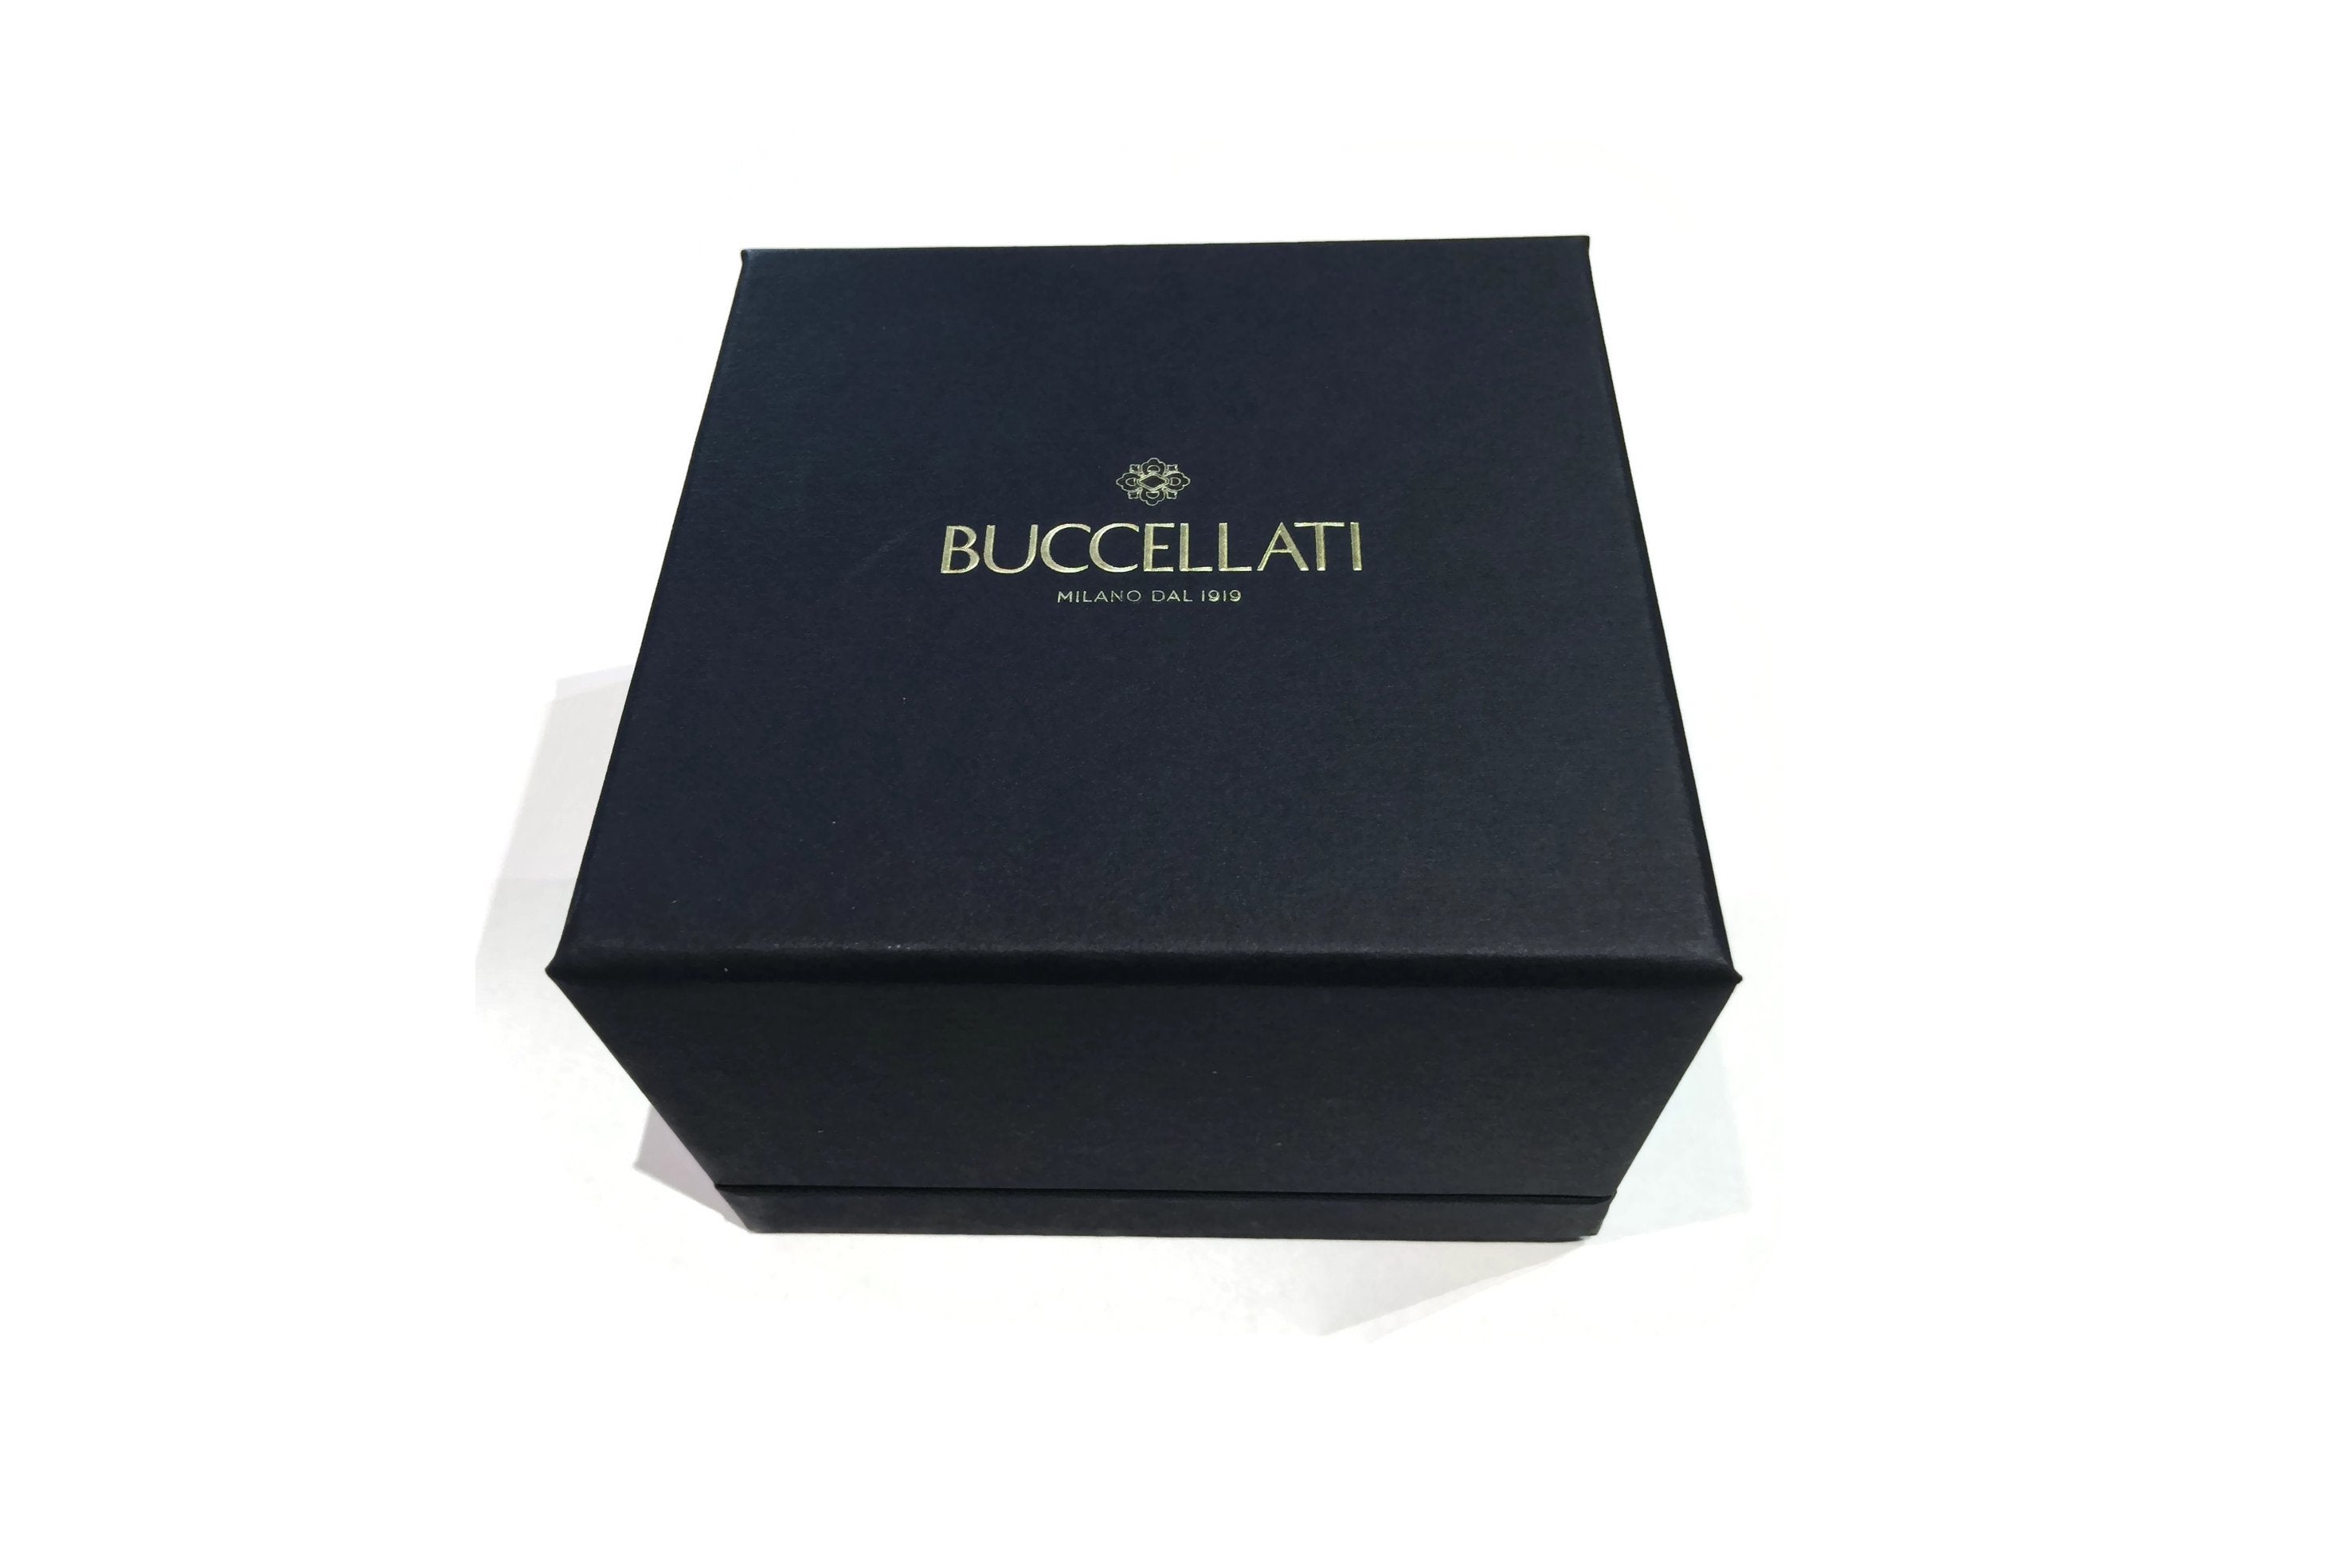 Buccellati - Macri Classica - Cuff Bracelet with Diamonds, 18k Black G ...